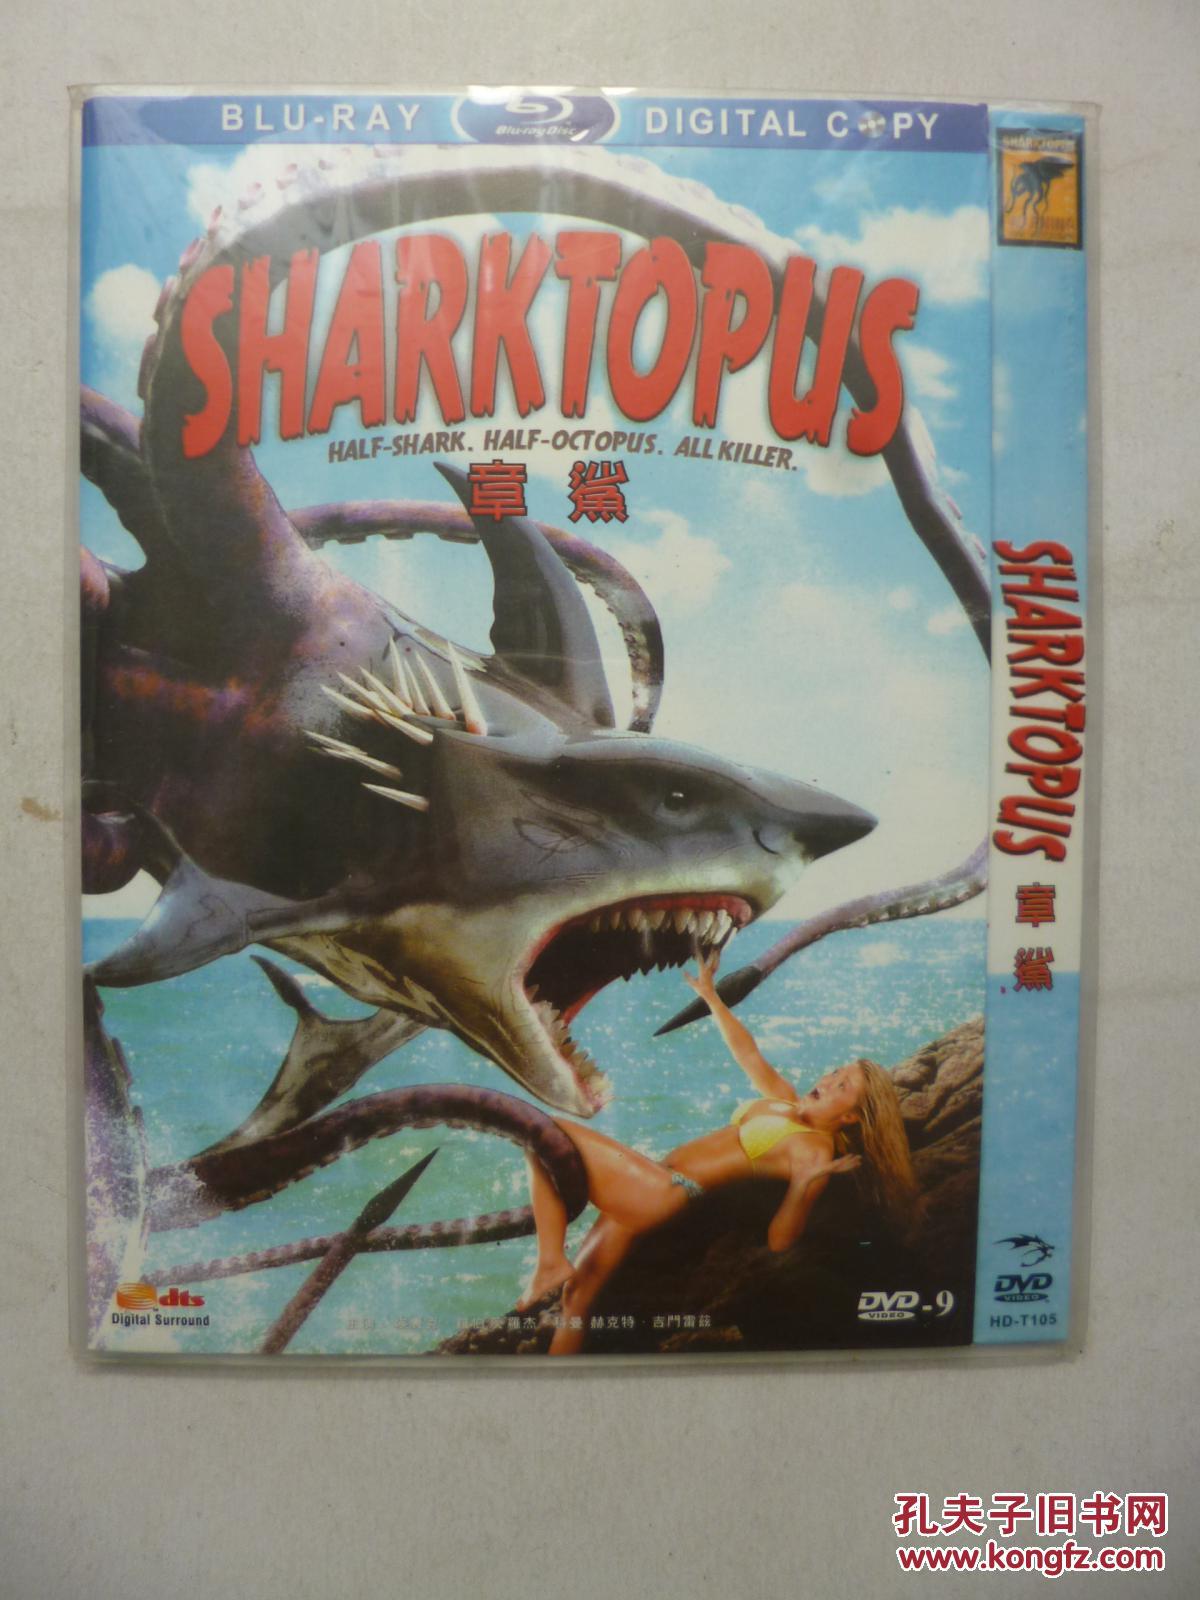 DVD 章鲨 Sharktopus 导演: 德克兰·奥布莱恩